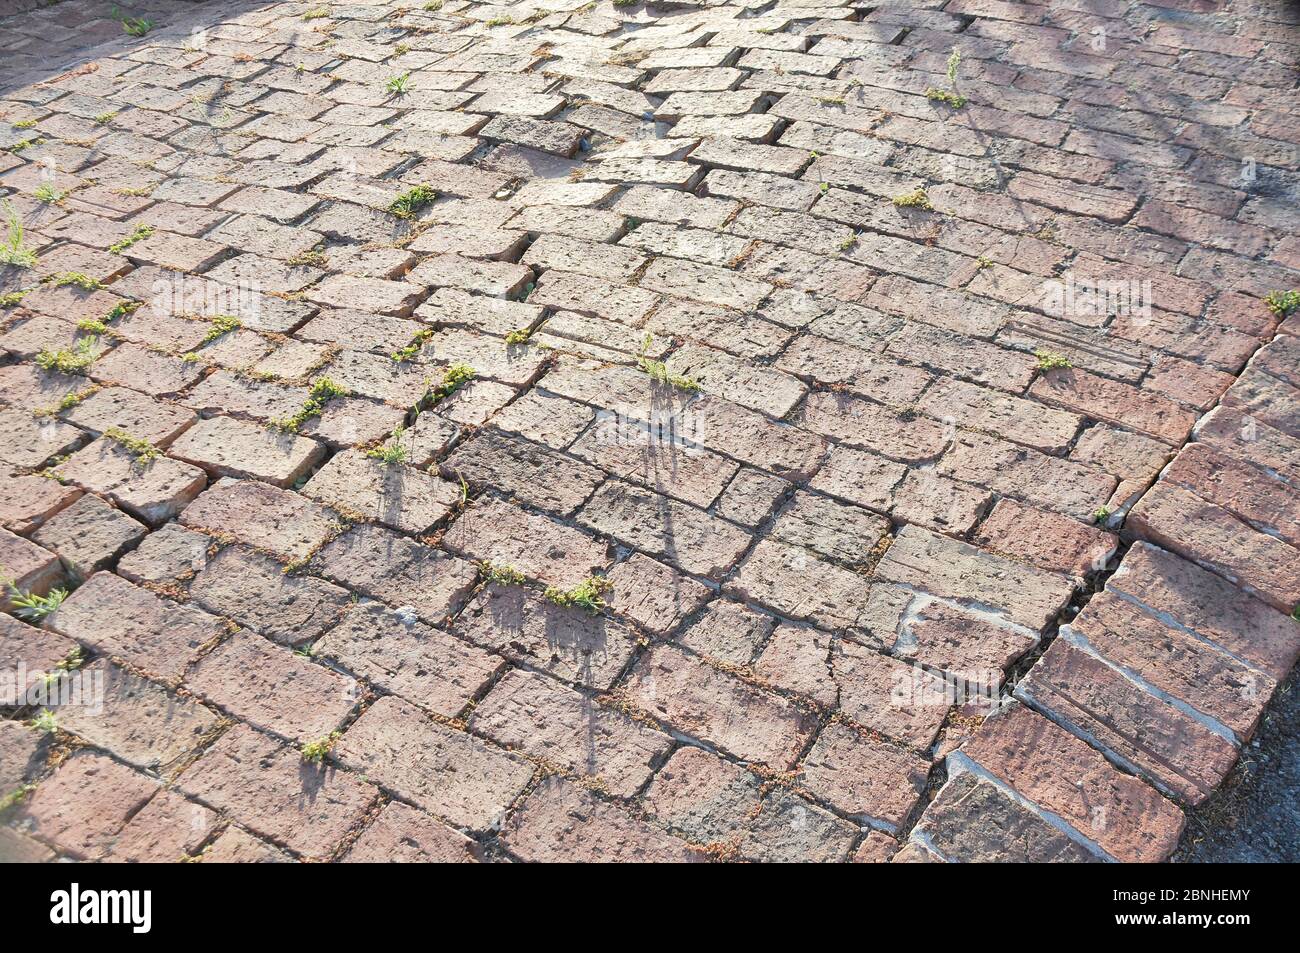 Ablassen oder einstürzen uneben roten Ziegelsteinpflaster auf instabilem Boden Stockfoto